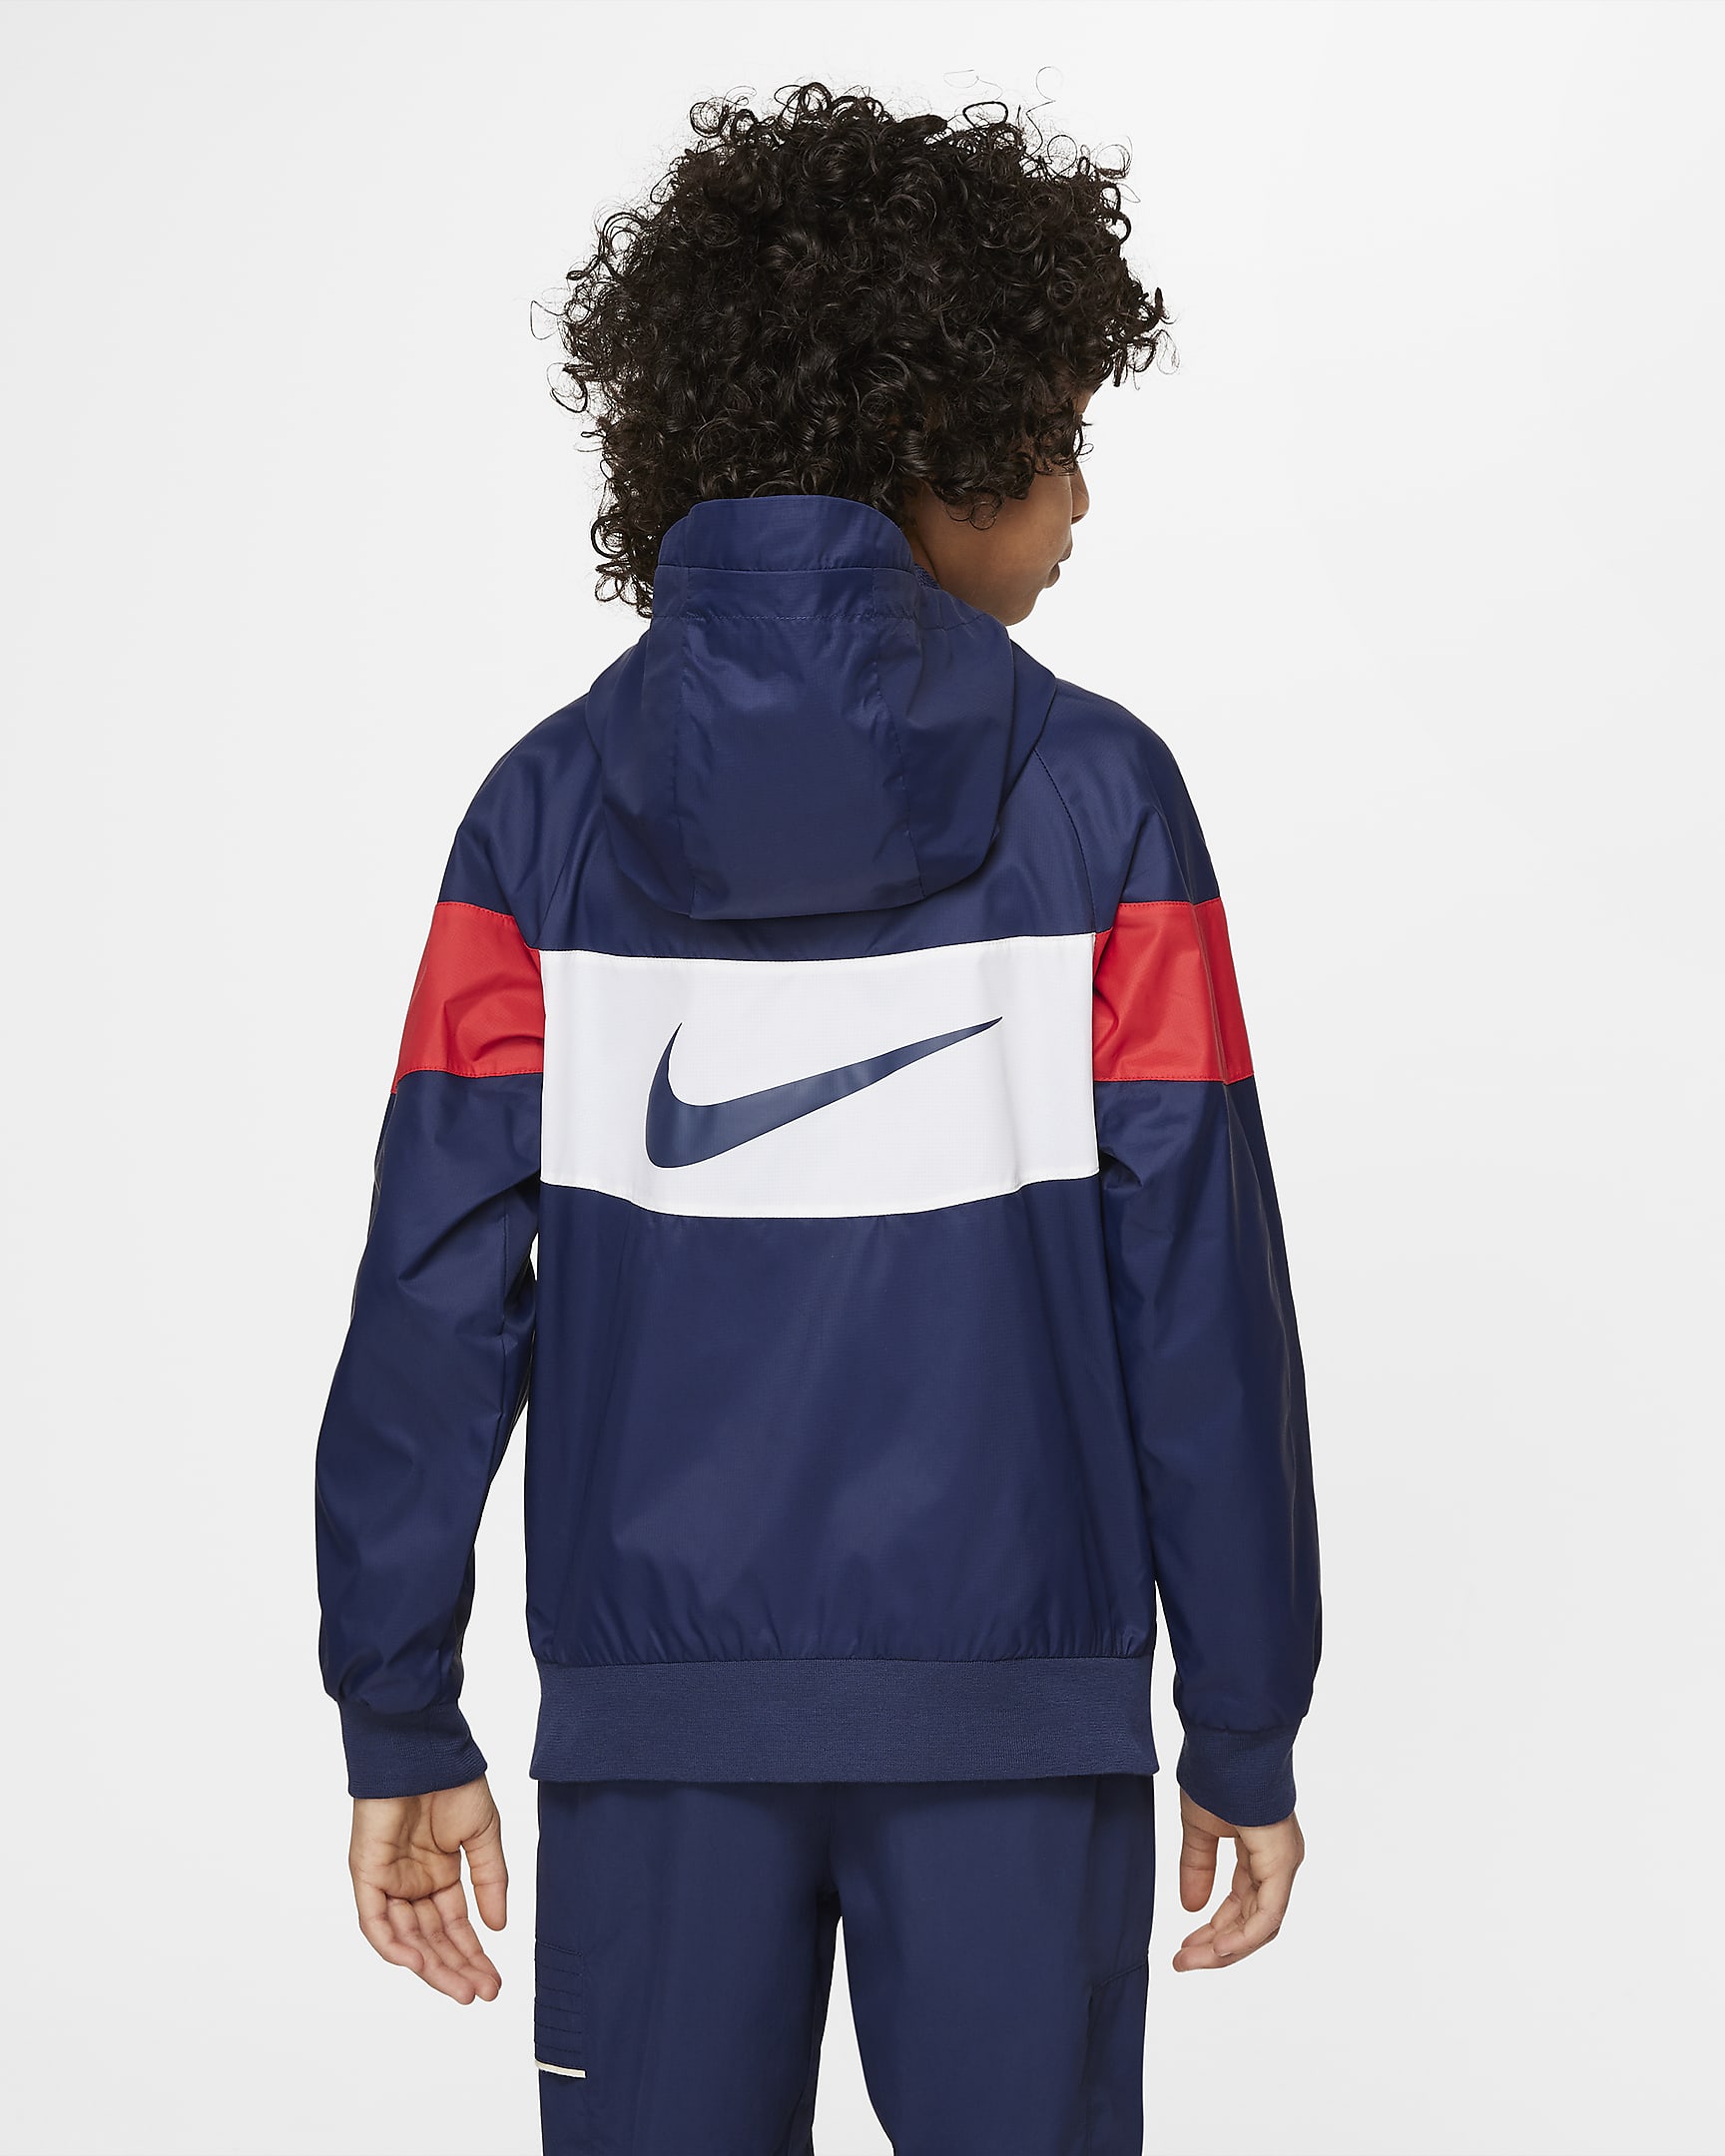 Paris Saint-Germain Big Kids' Hooded Jacket. Nike.com